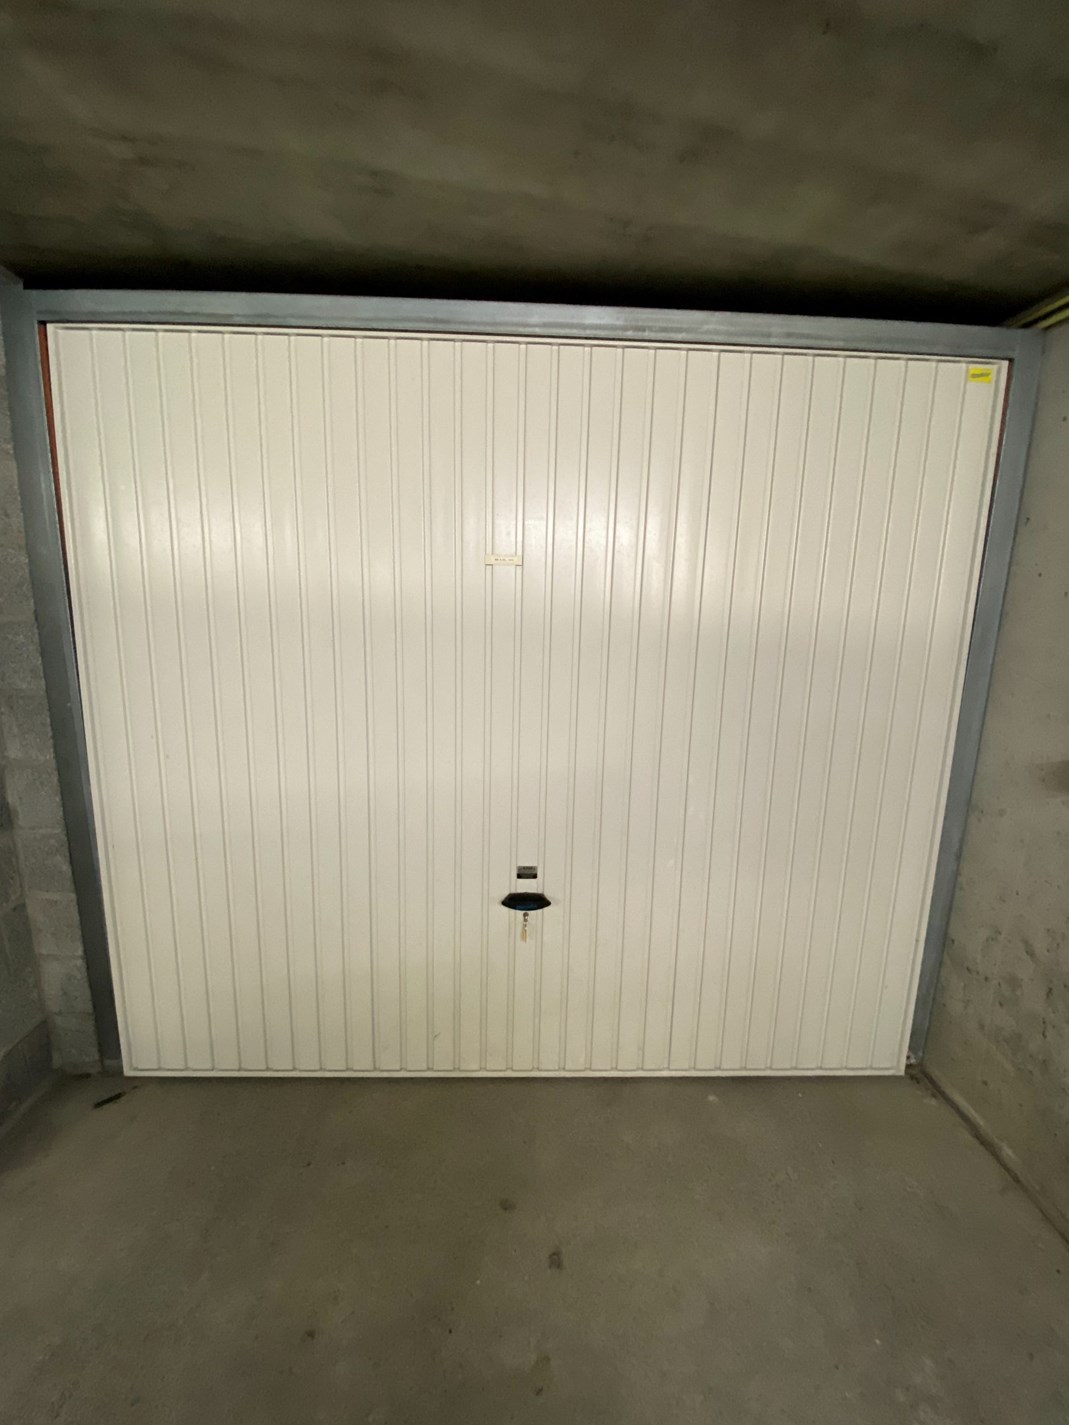 Vlot toegankelijke garagebox op niveau -2 in de residentie Seabird te Duinbergen. 